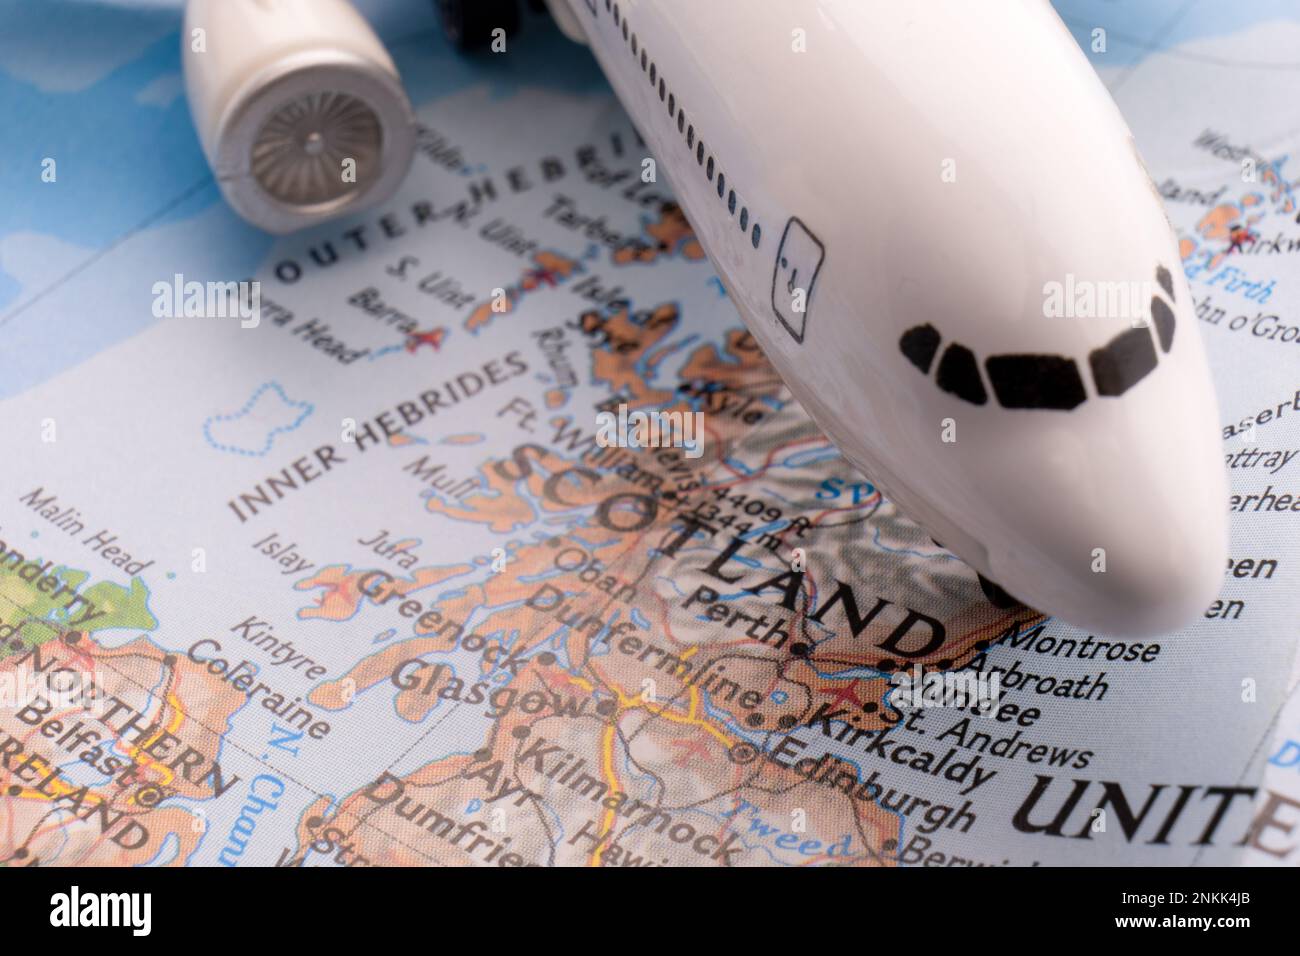 Nahaufnahme eines Miniatur-Passagierflugzeugs auf einer farbenfrohen Karte, die Edinburgh, Dundee Schottland durch selektiven Fokus und Hintergrundunschärfe zeigt Stockfoto